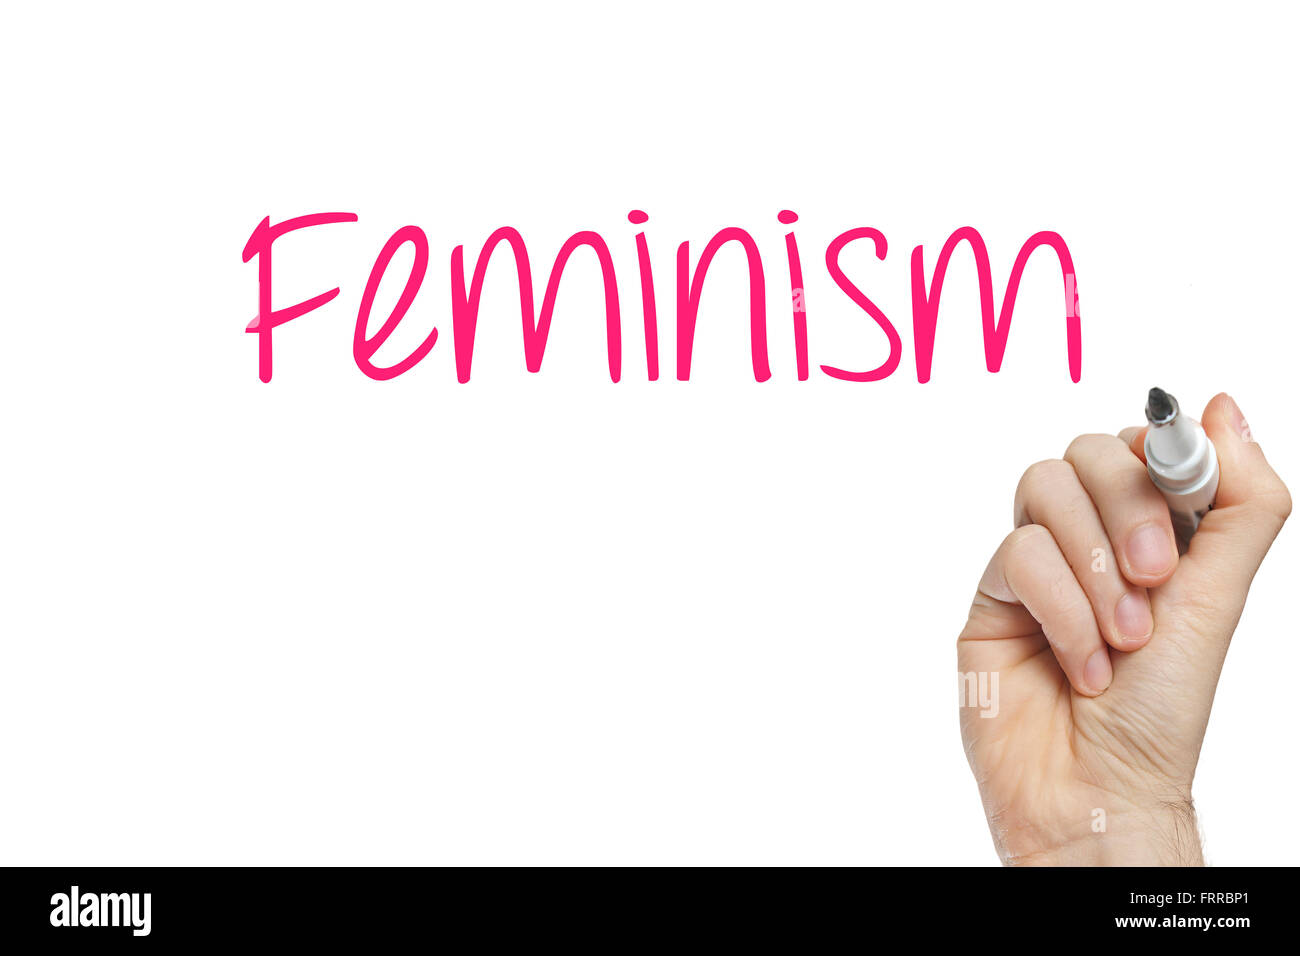 El feminismo de escritura a mano en una pizarra blanca Foto de stock